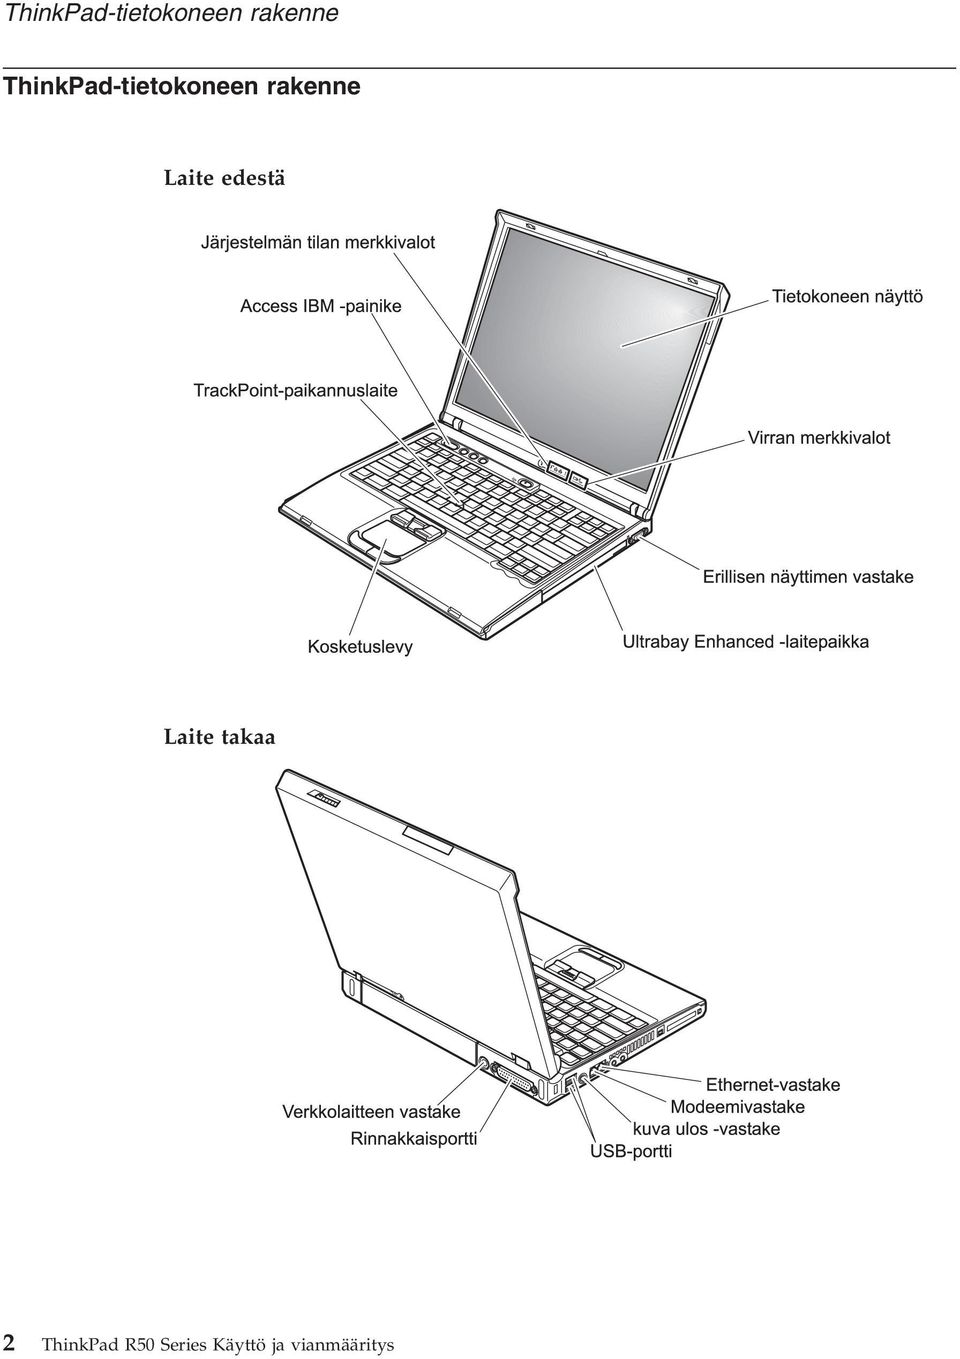 ThinkPad R50 Series Käyttö ja